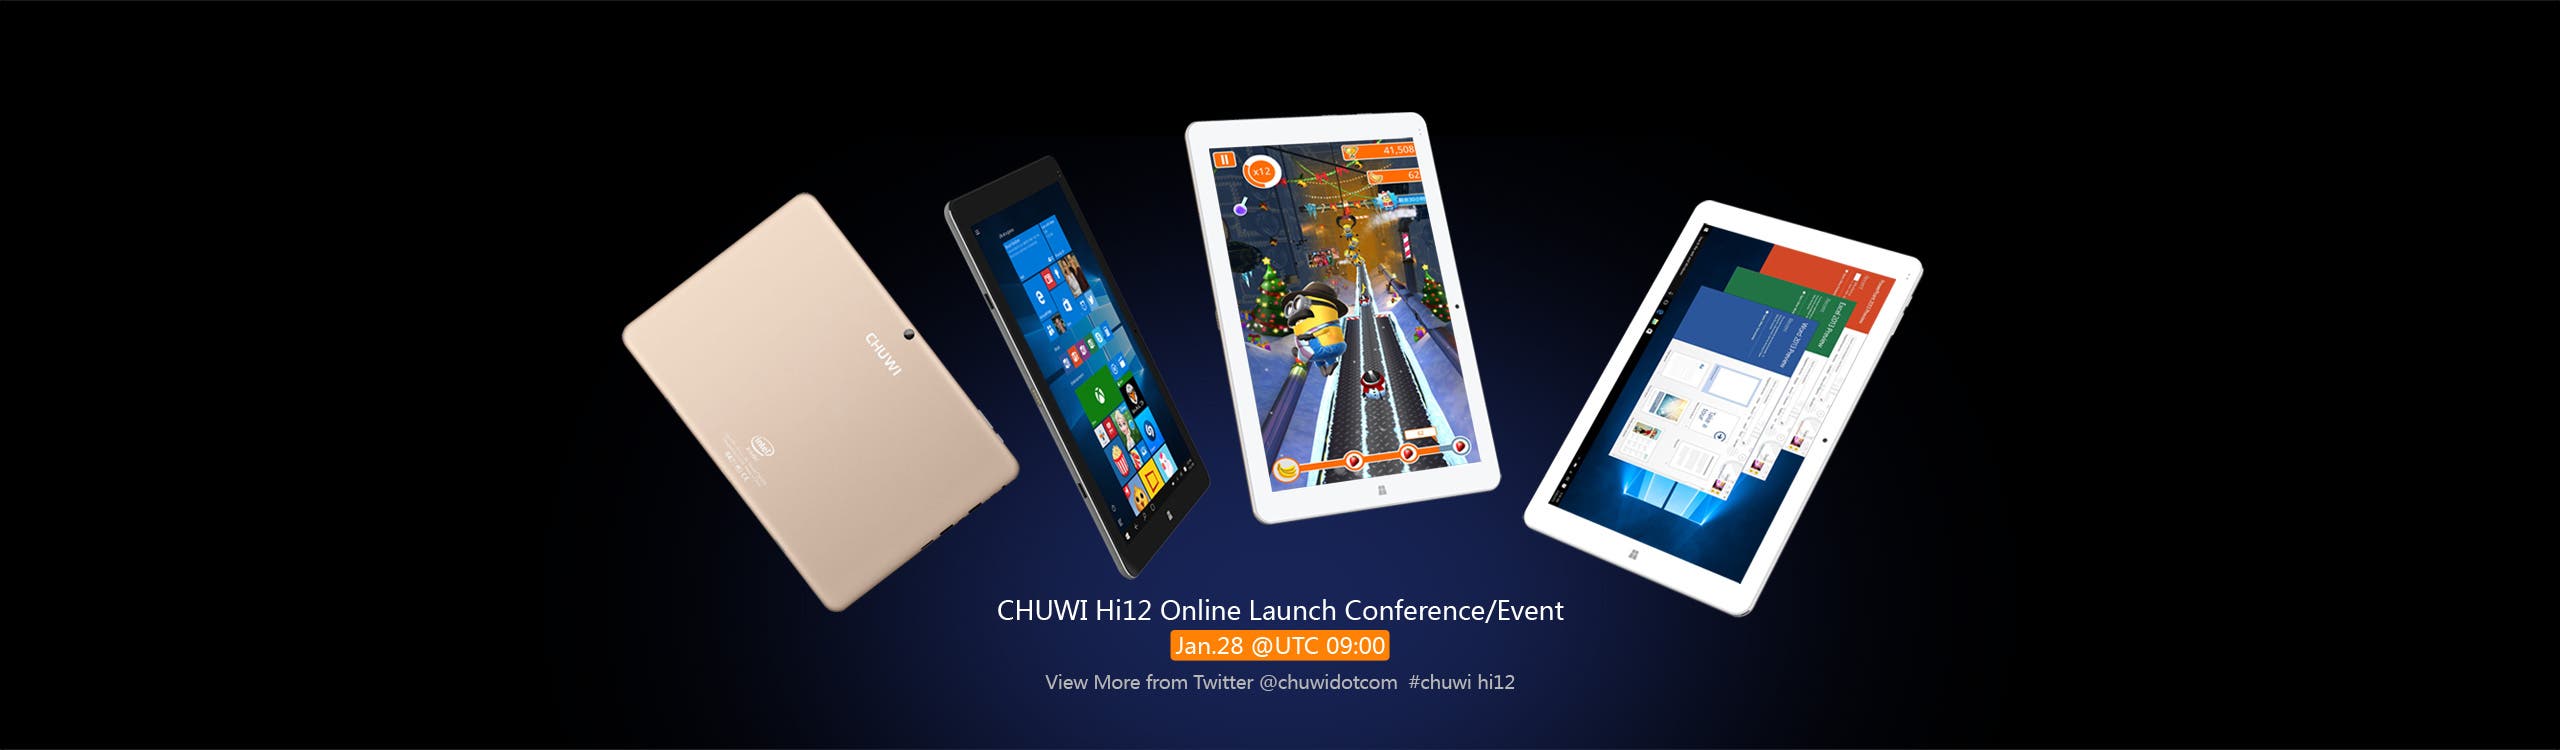 chuwi hi12 launch